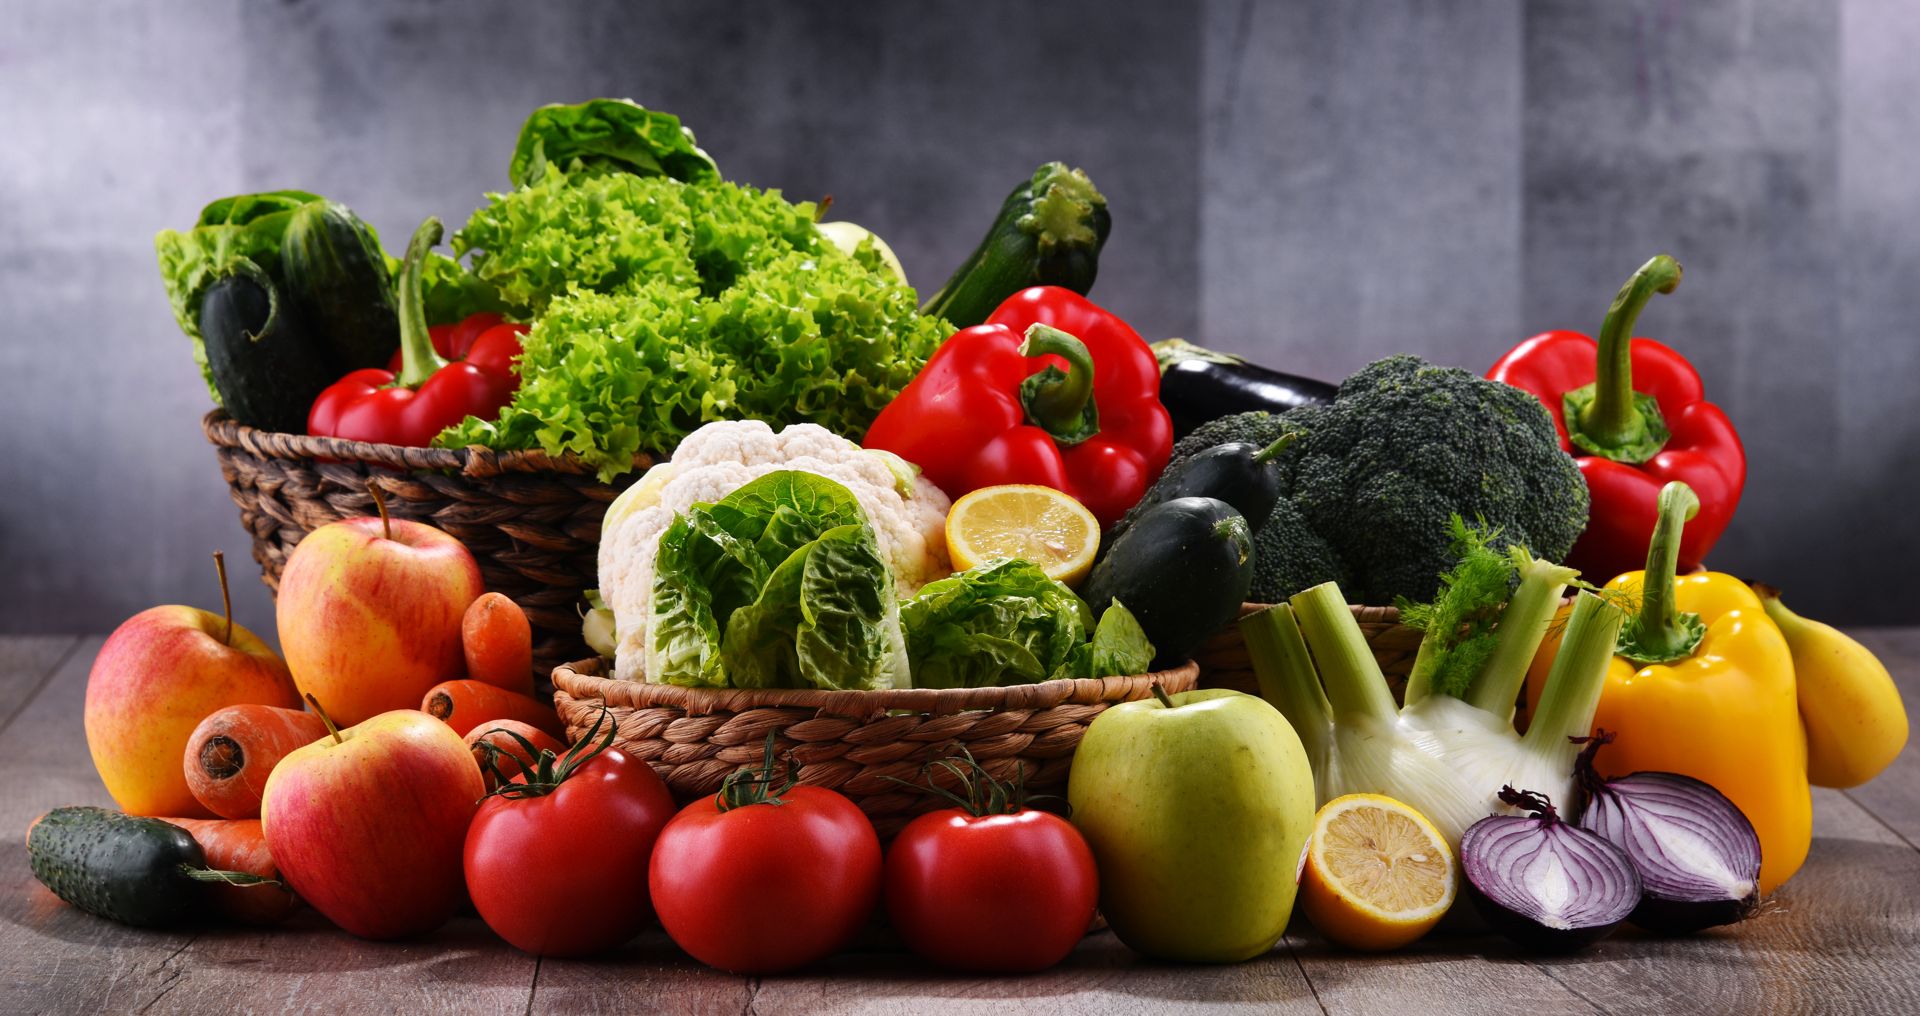 Έχετε αναρωτηθεί; – Πότε τα λαχανικά θεωρούνται φρέσκα;